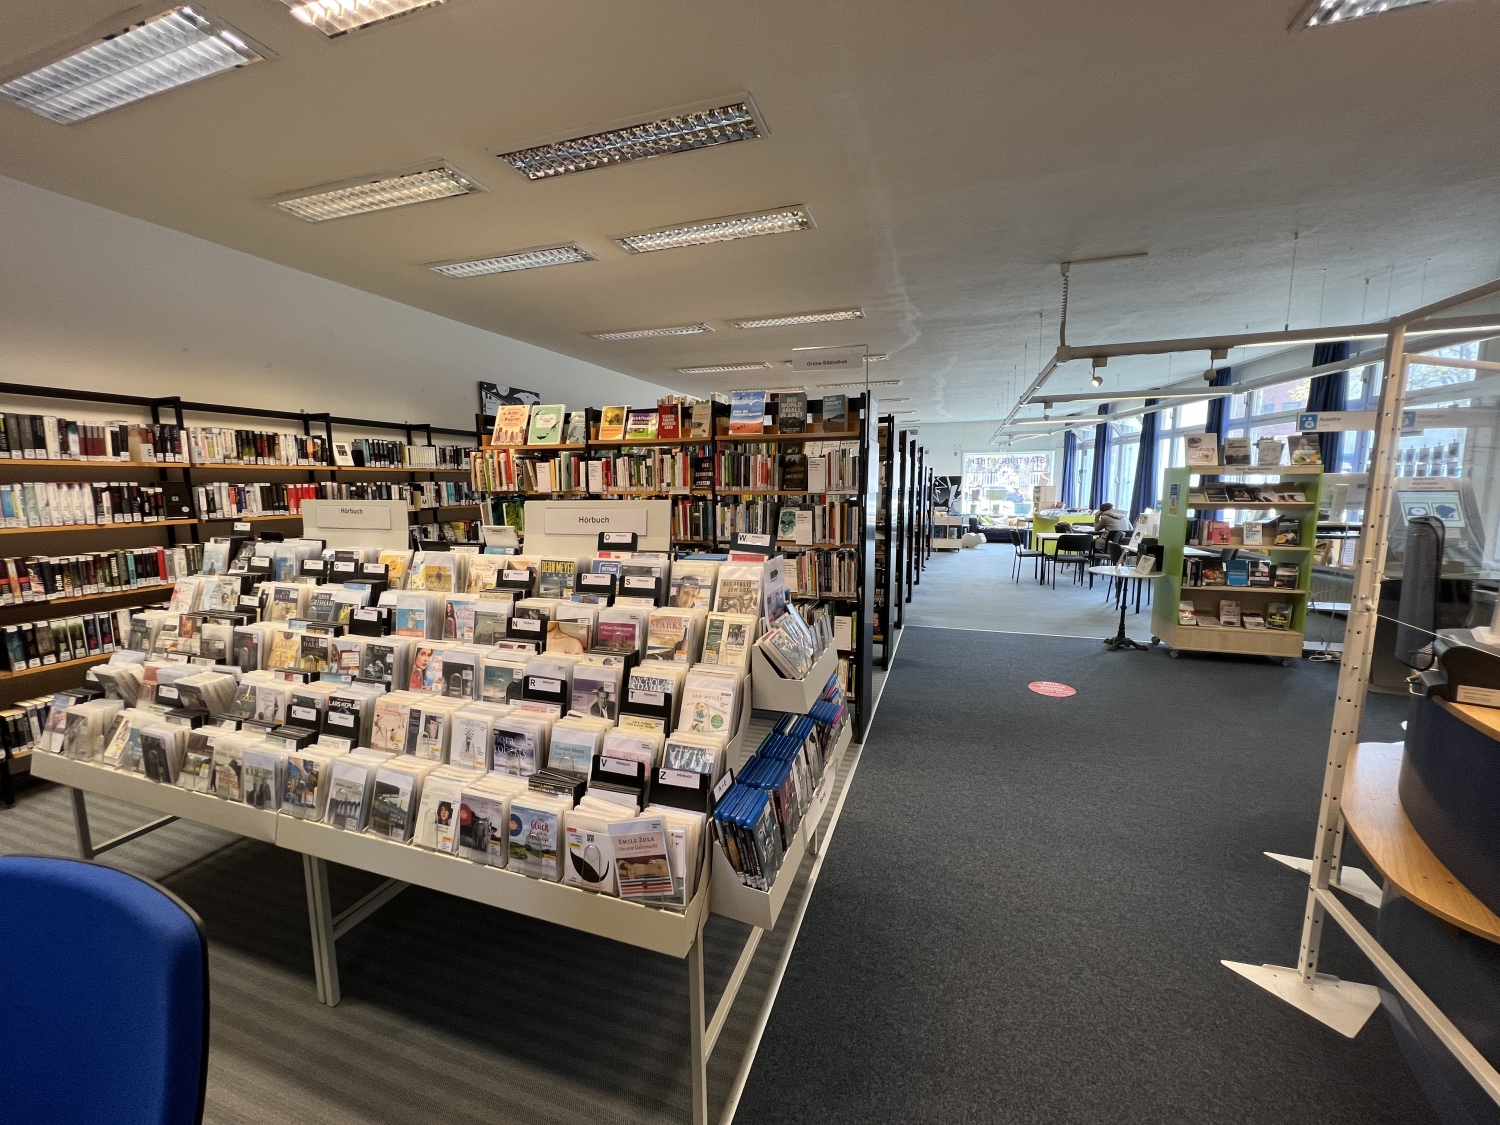 Bibliothek Tiergarten-Süd